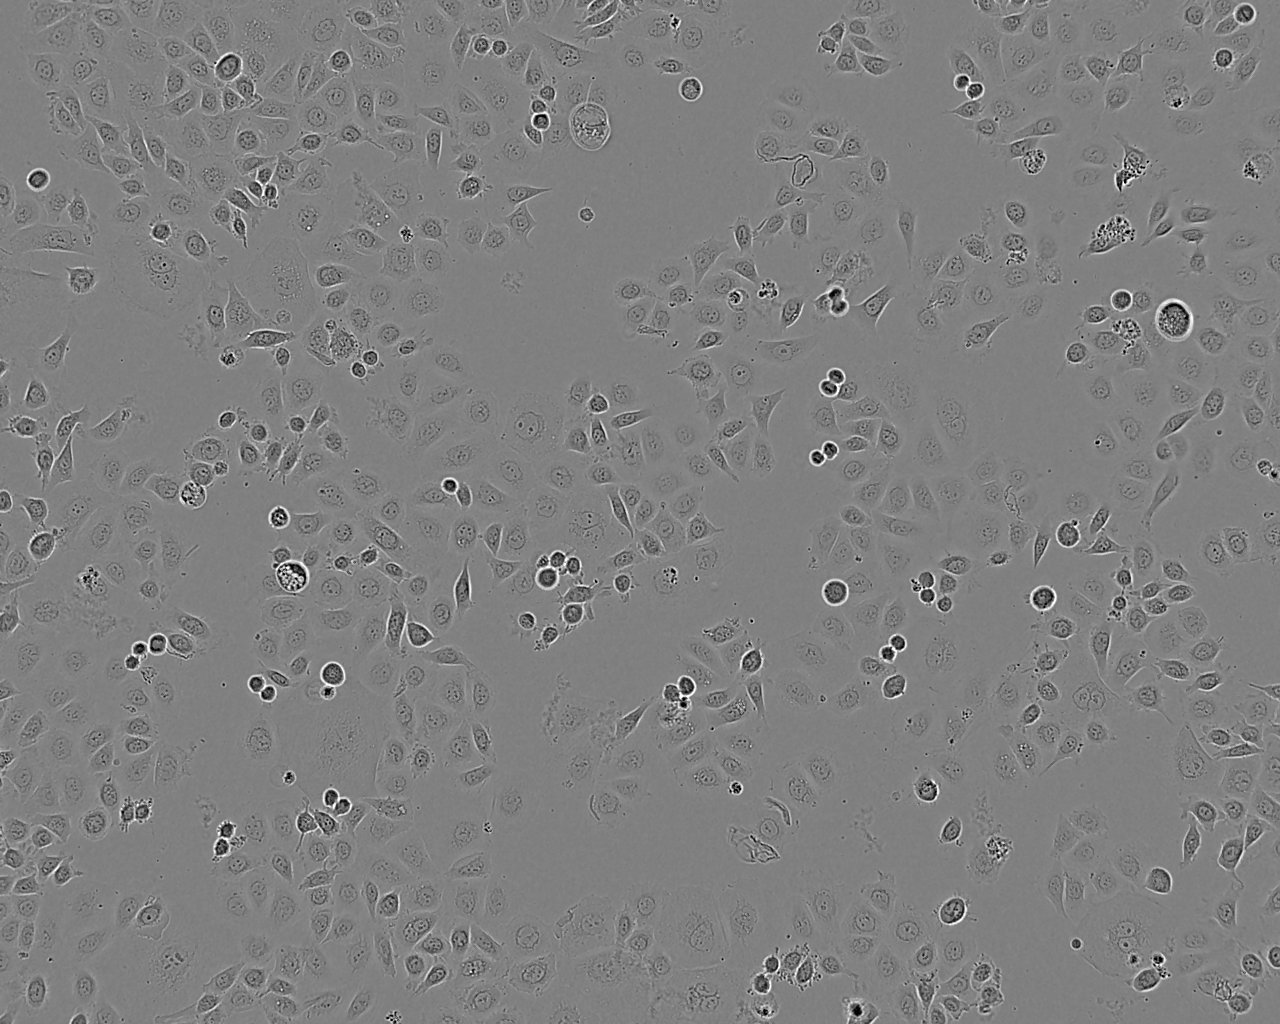 SK-ES-1 epithelioid cells肉瘤细胞系,SK-ES-1 epithelioid cells